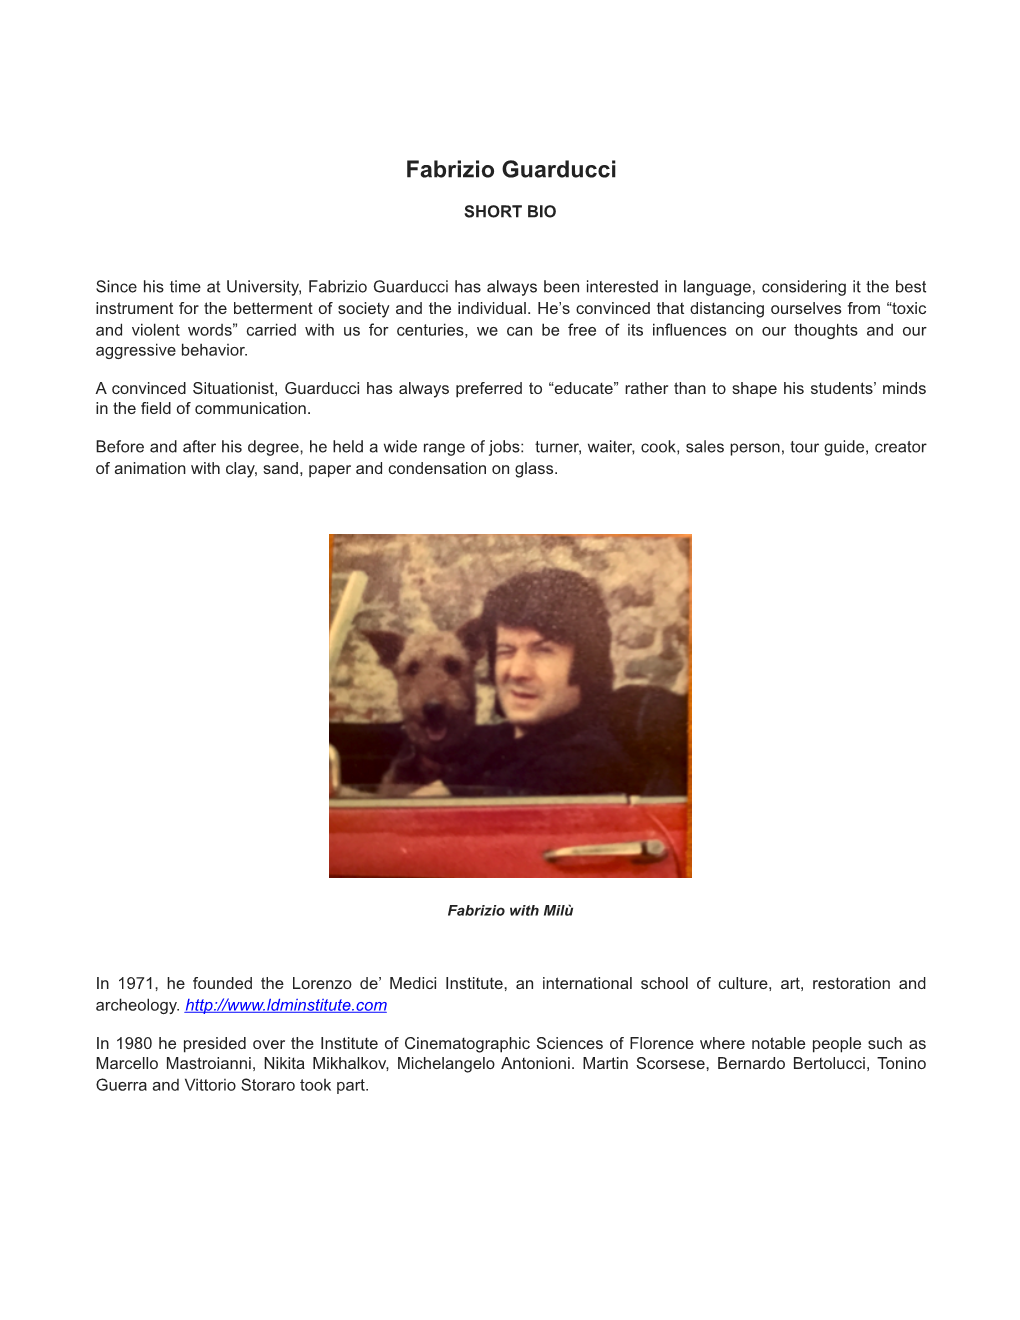 Biography and CV Fabrizio Guarducci